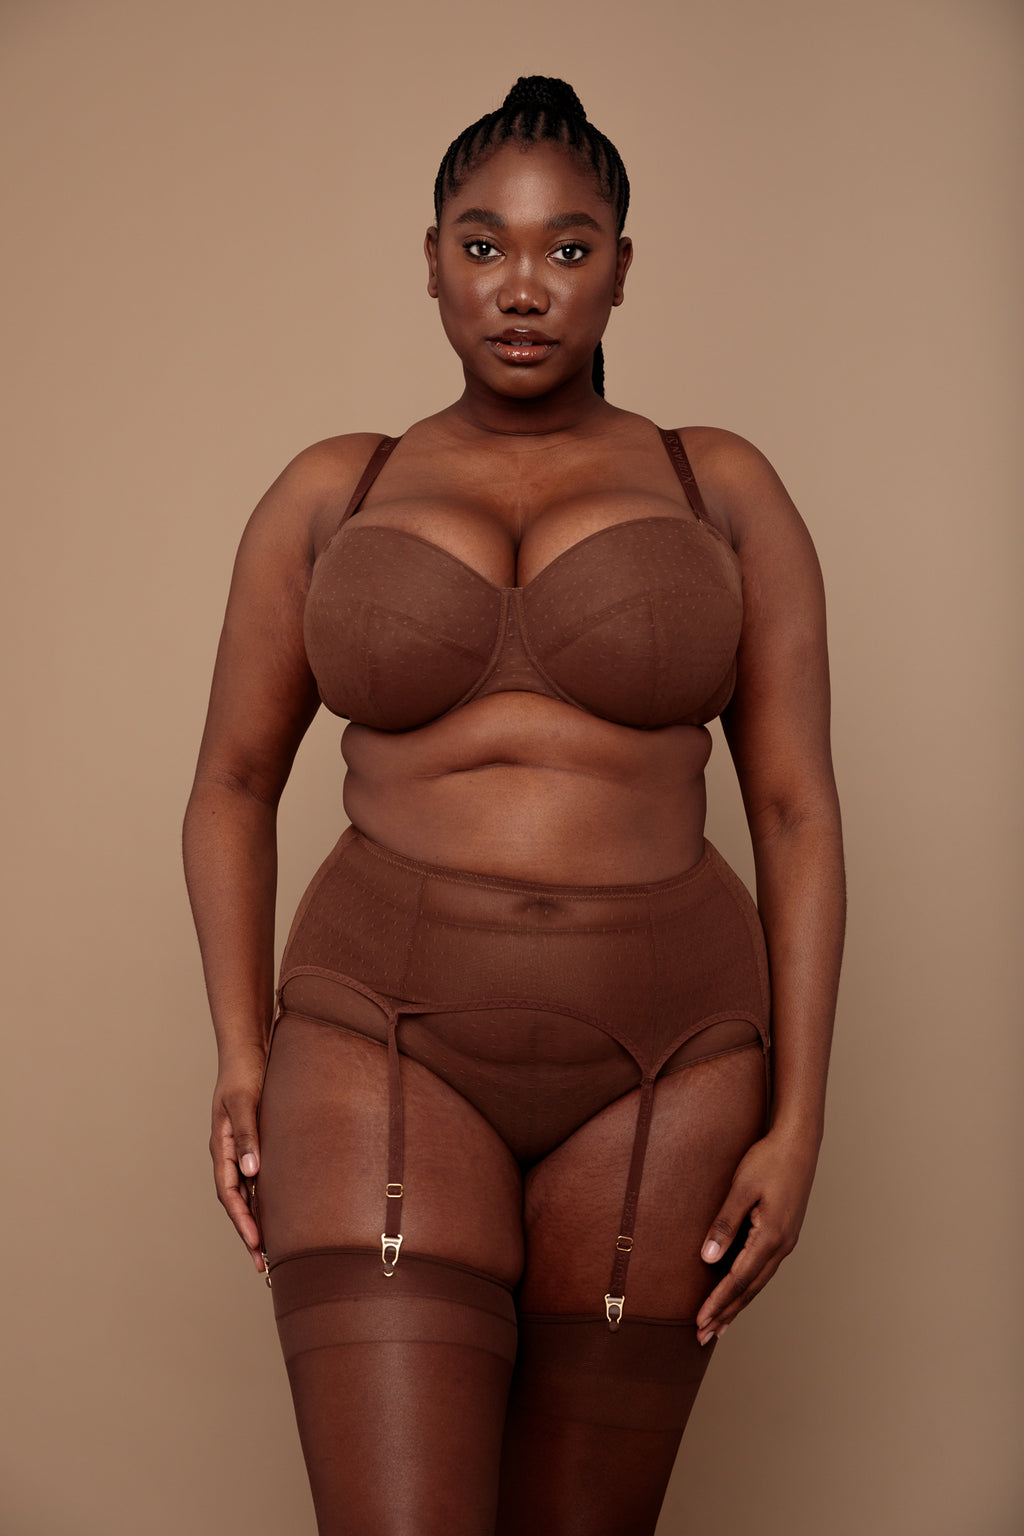 Black-owned lingerie brand Nubian Skin